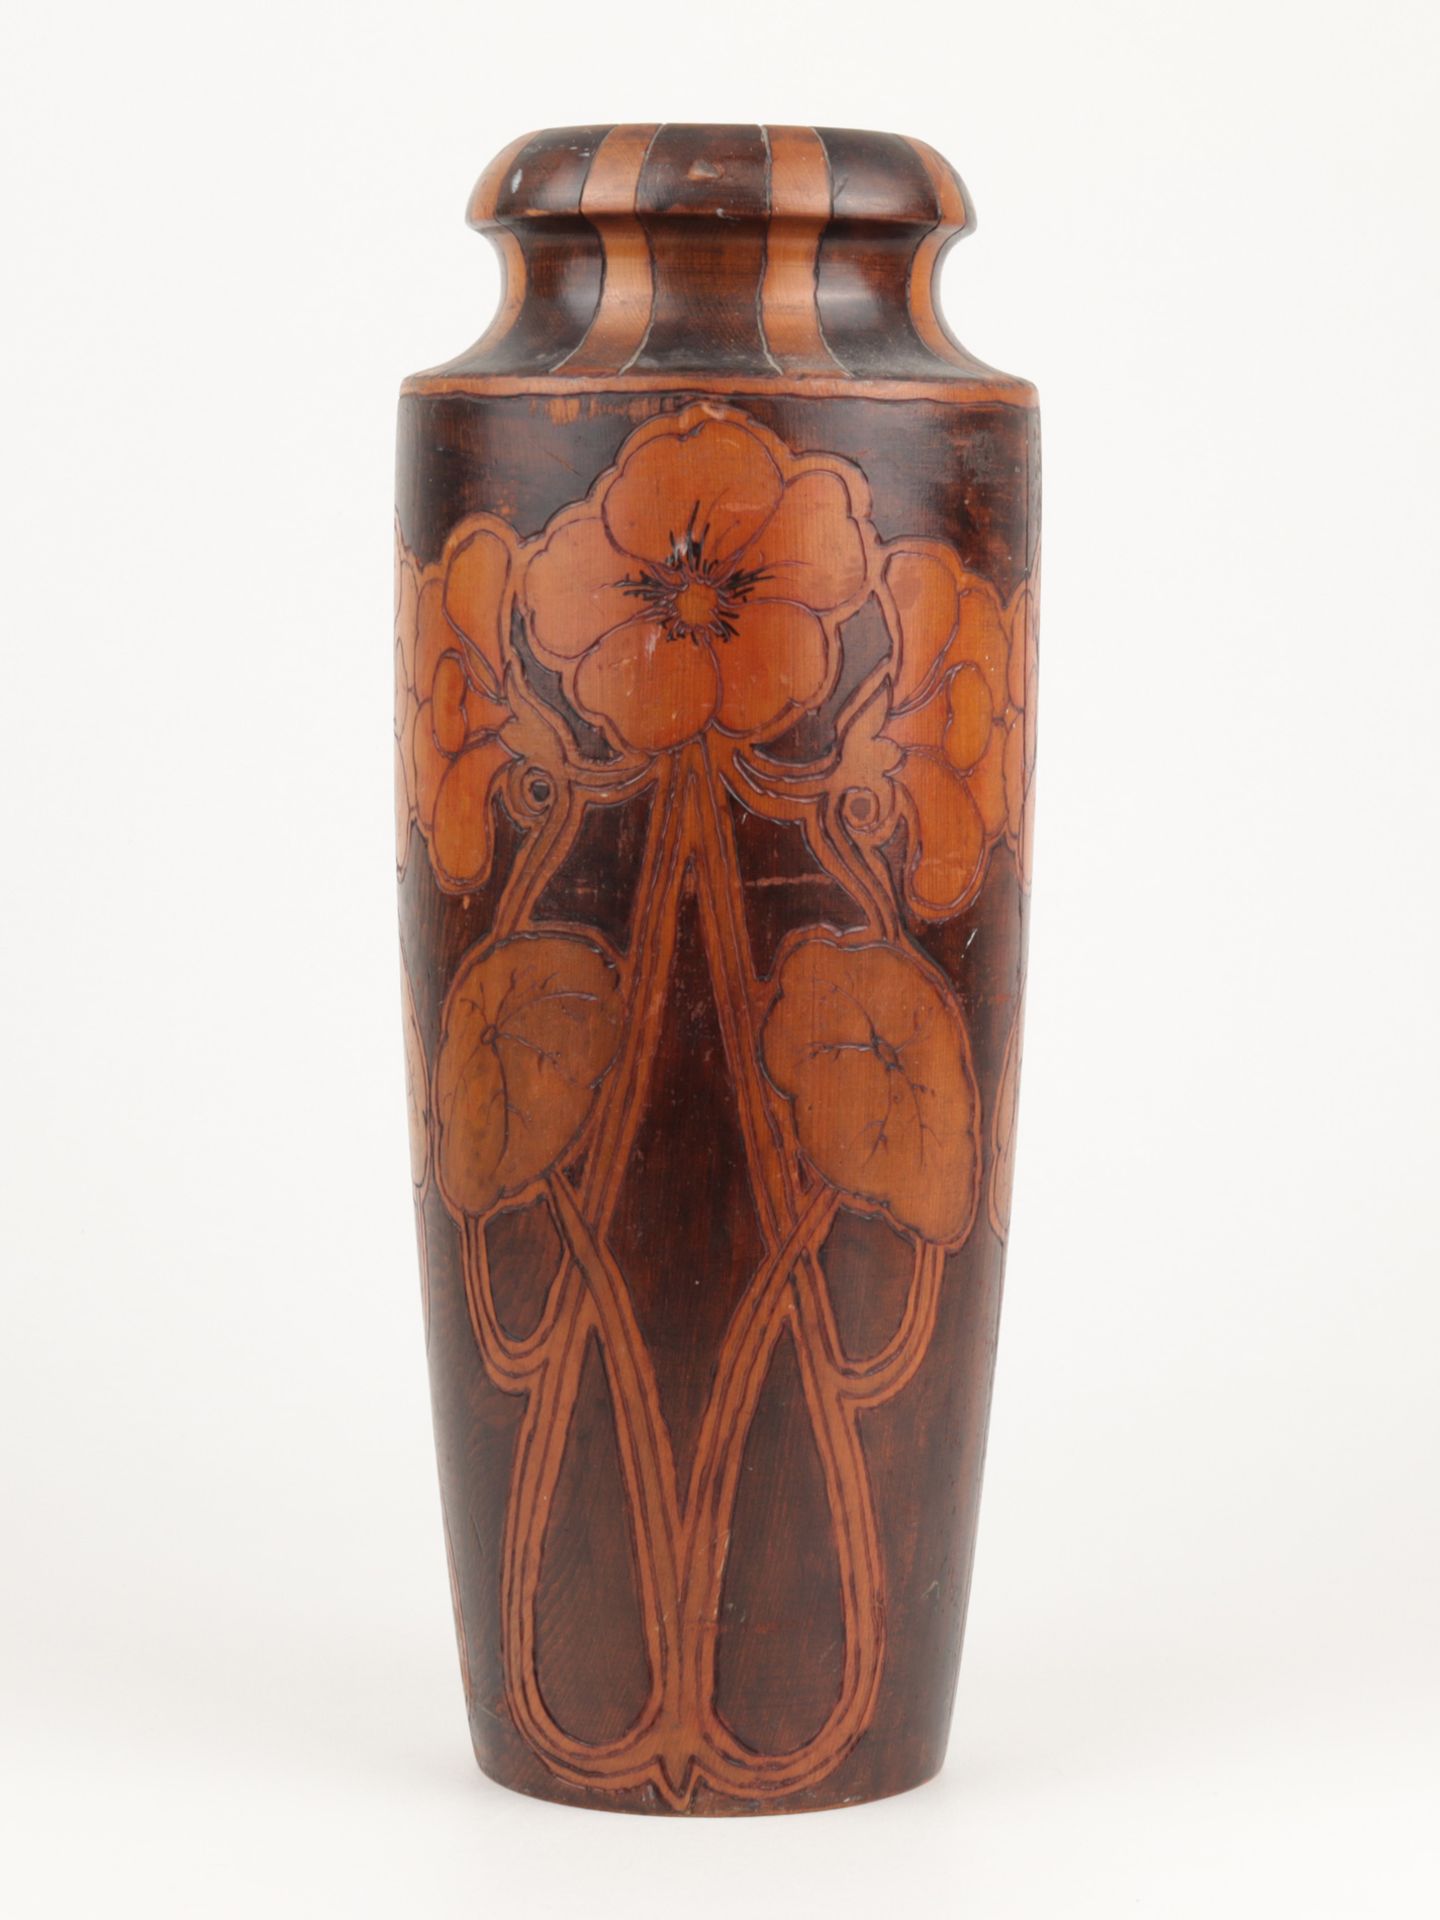 Jugendstil - Vase um 1910, Australien, Holz, gedrechselt, Ritzdekor, hell- u. dunkel g